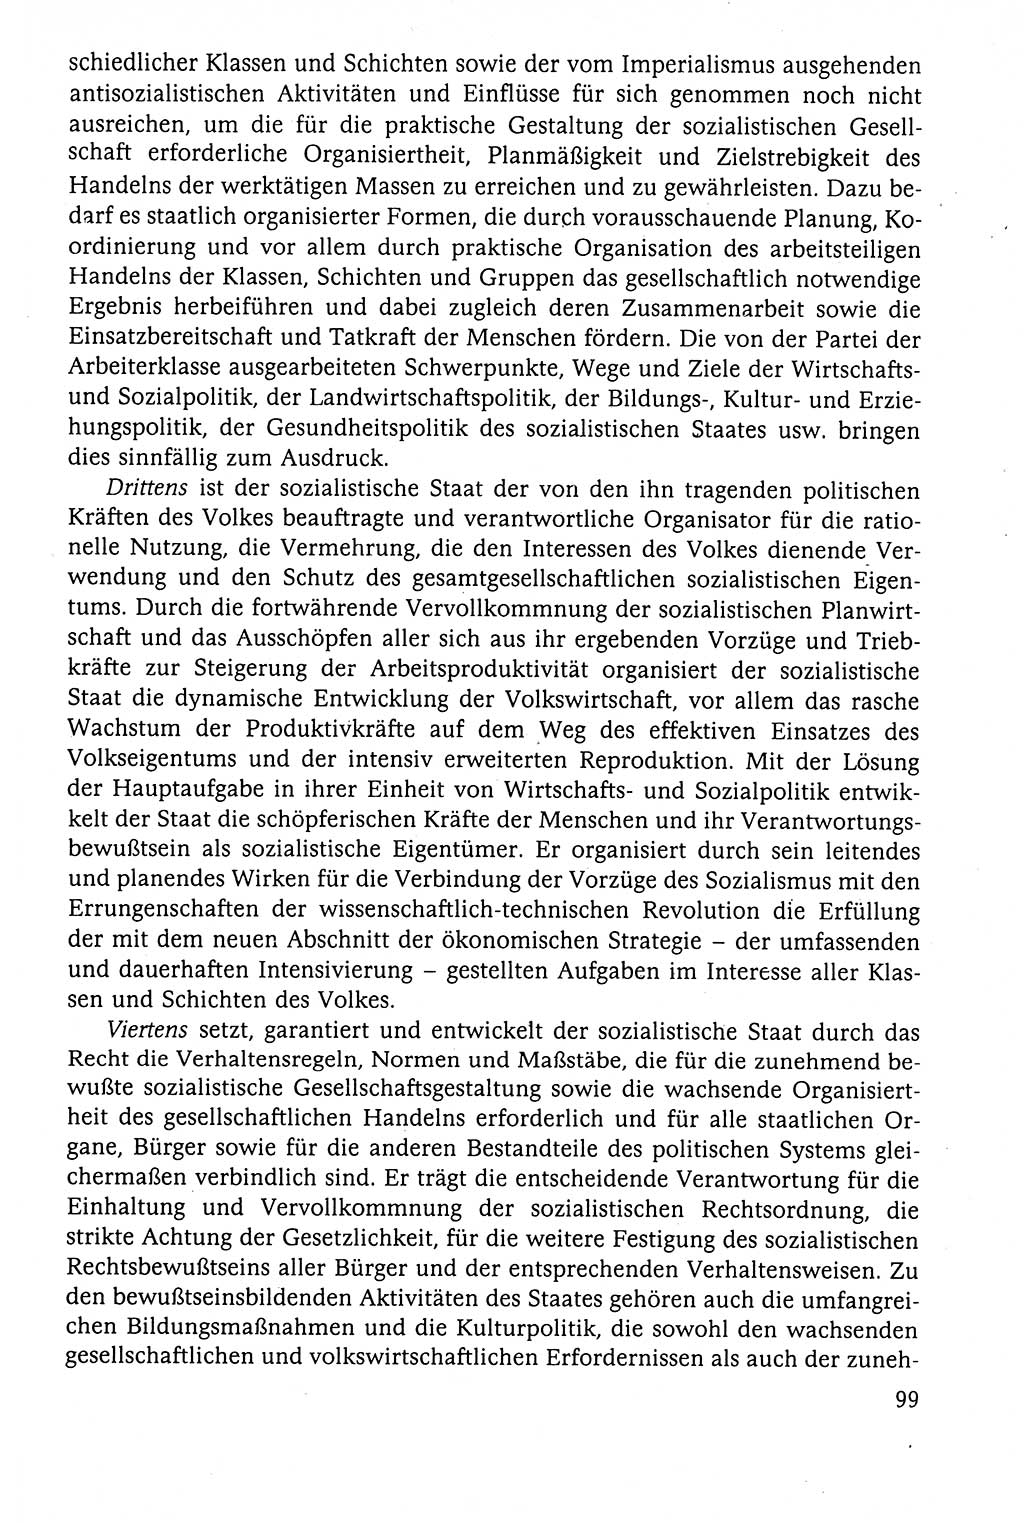 Der Staat im politischen System der DDR (Deutsche Demokratische Republik) 1986, Seite 99 (St. pol. Sys. DDR 1986, S. 99)